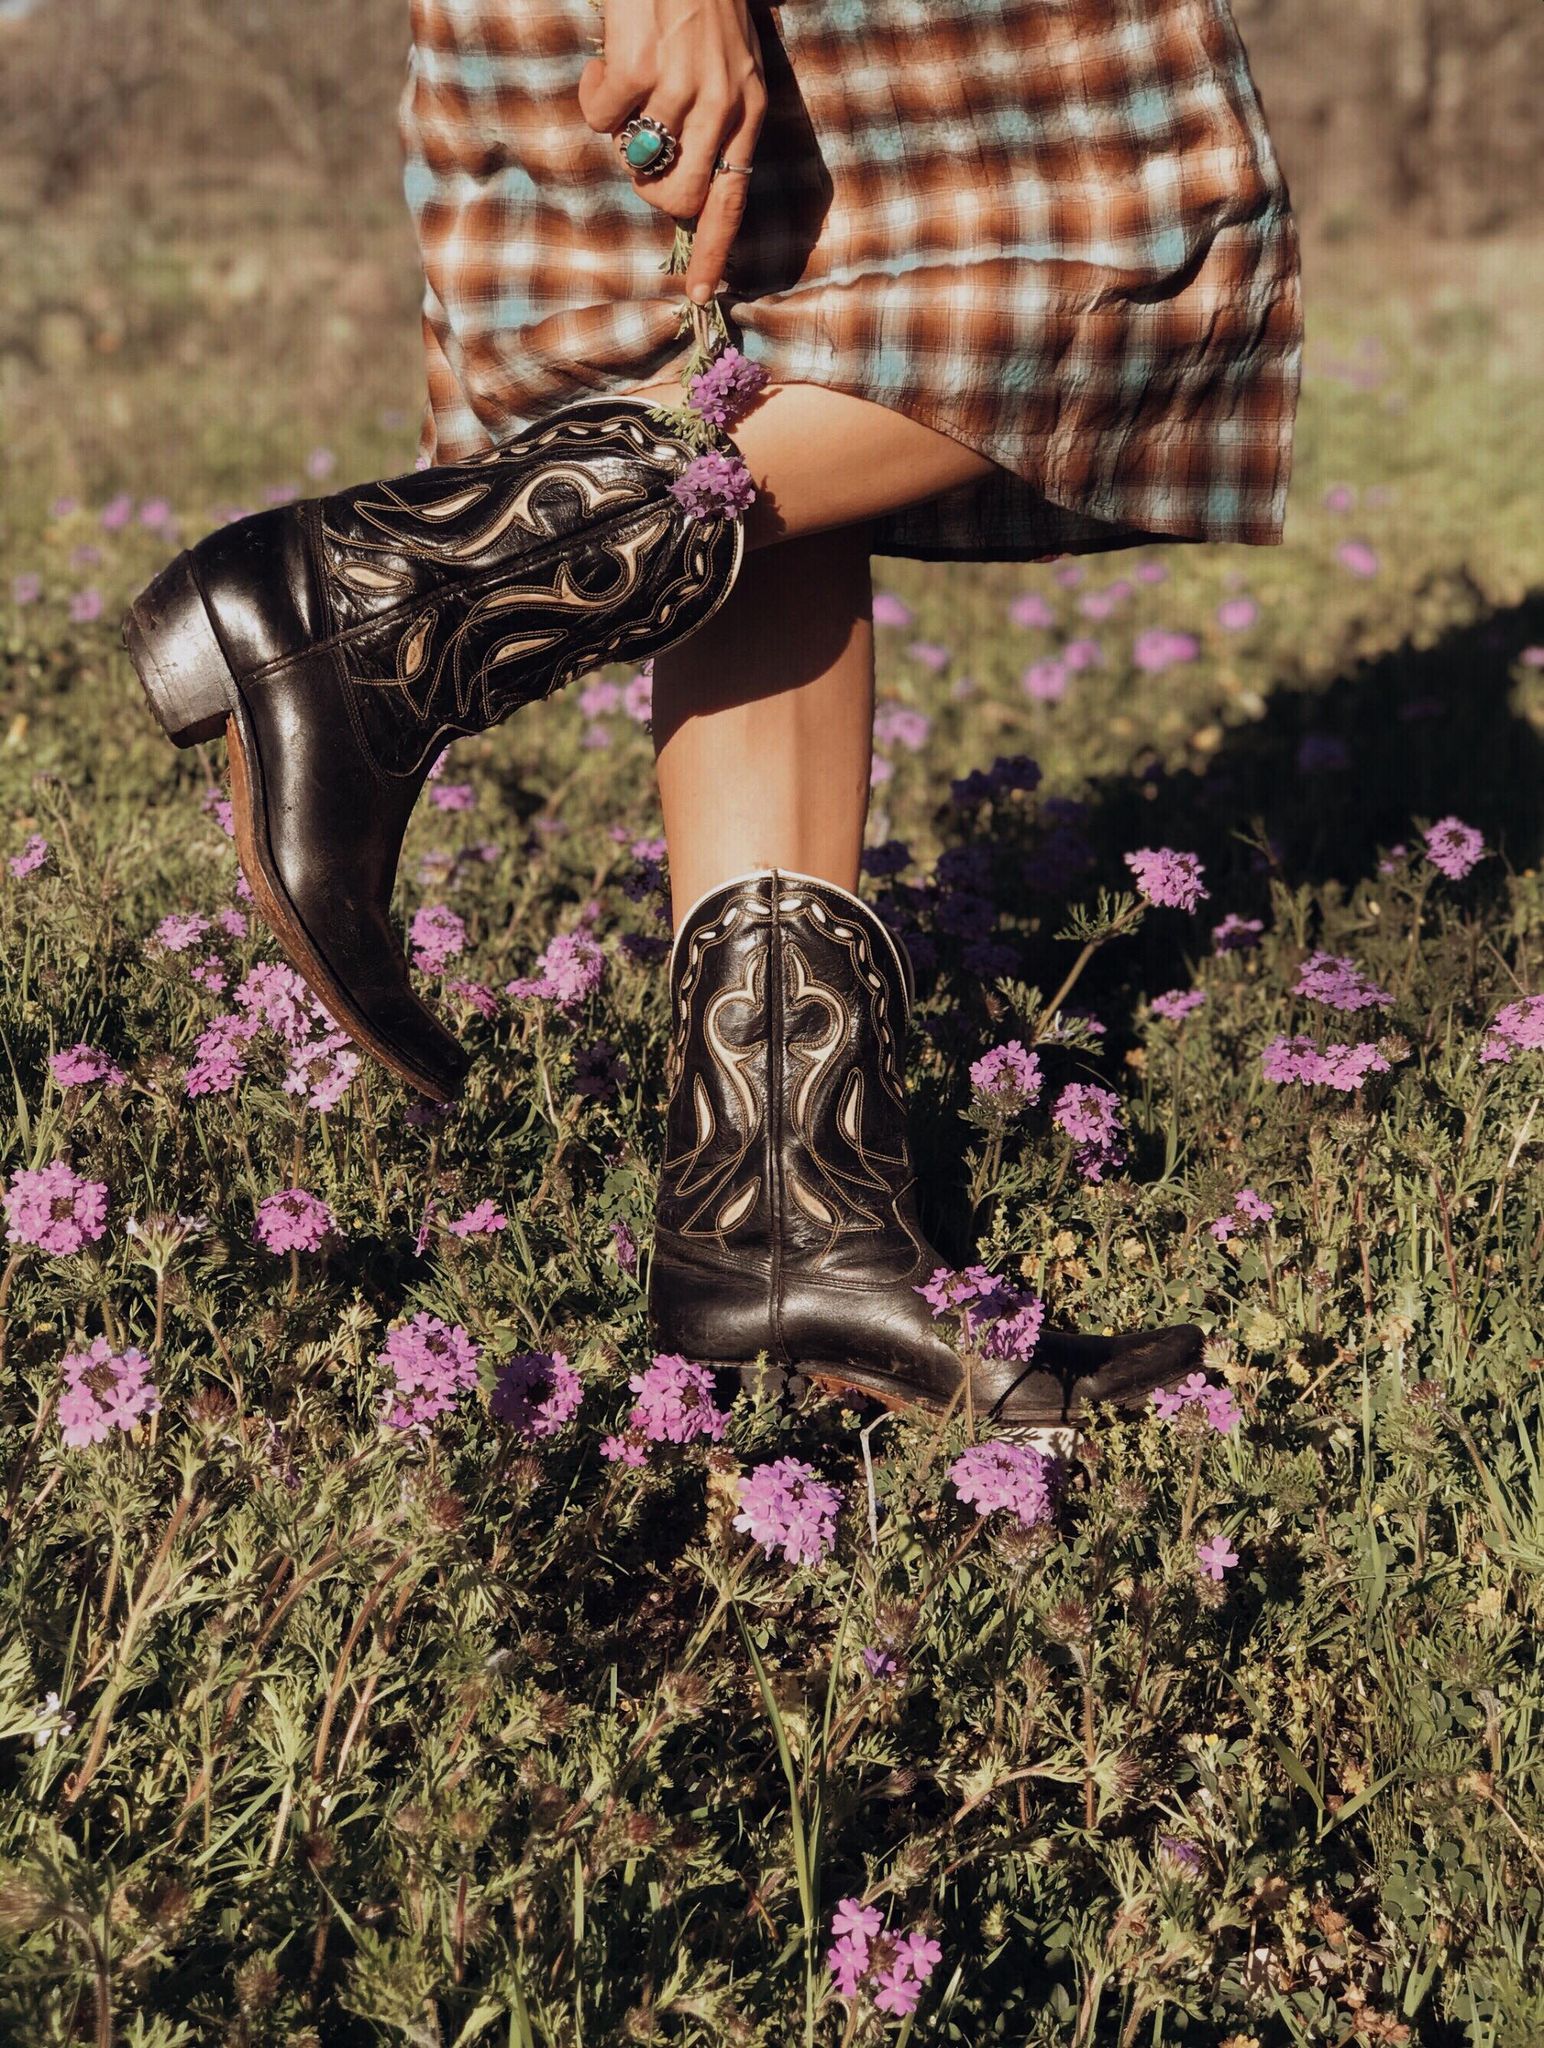 1940's Acme Cowboy Boots